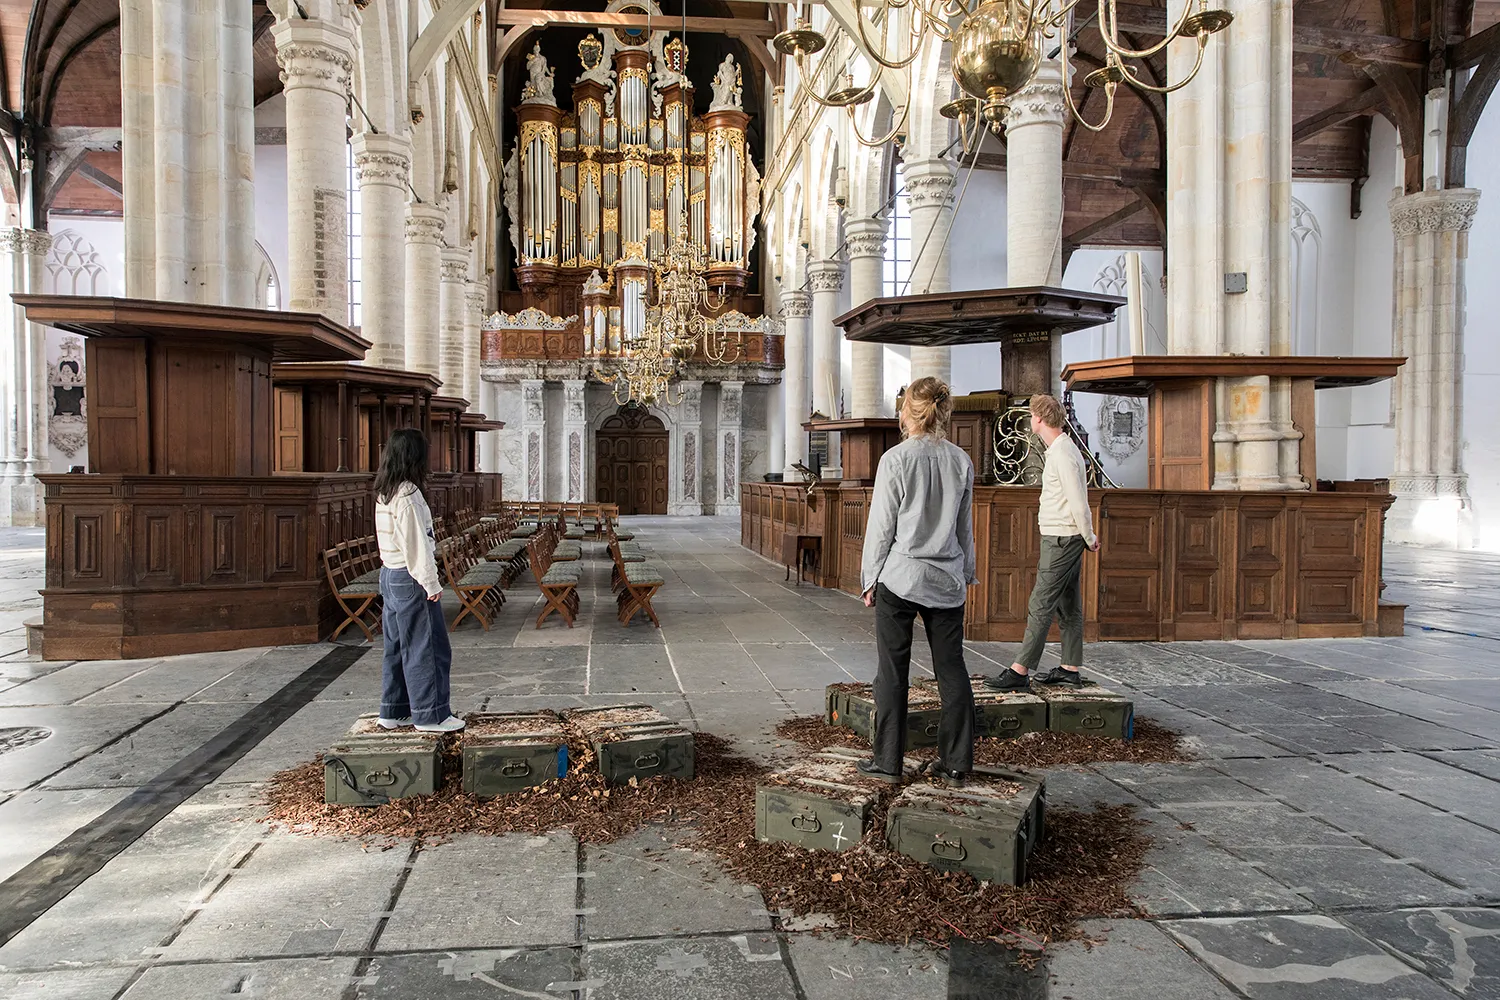 Drie personen staand op groene houten kisten geplaatst op houtsnippers, starend naar het kerkorgel in de Oude Kerk